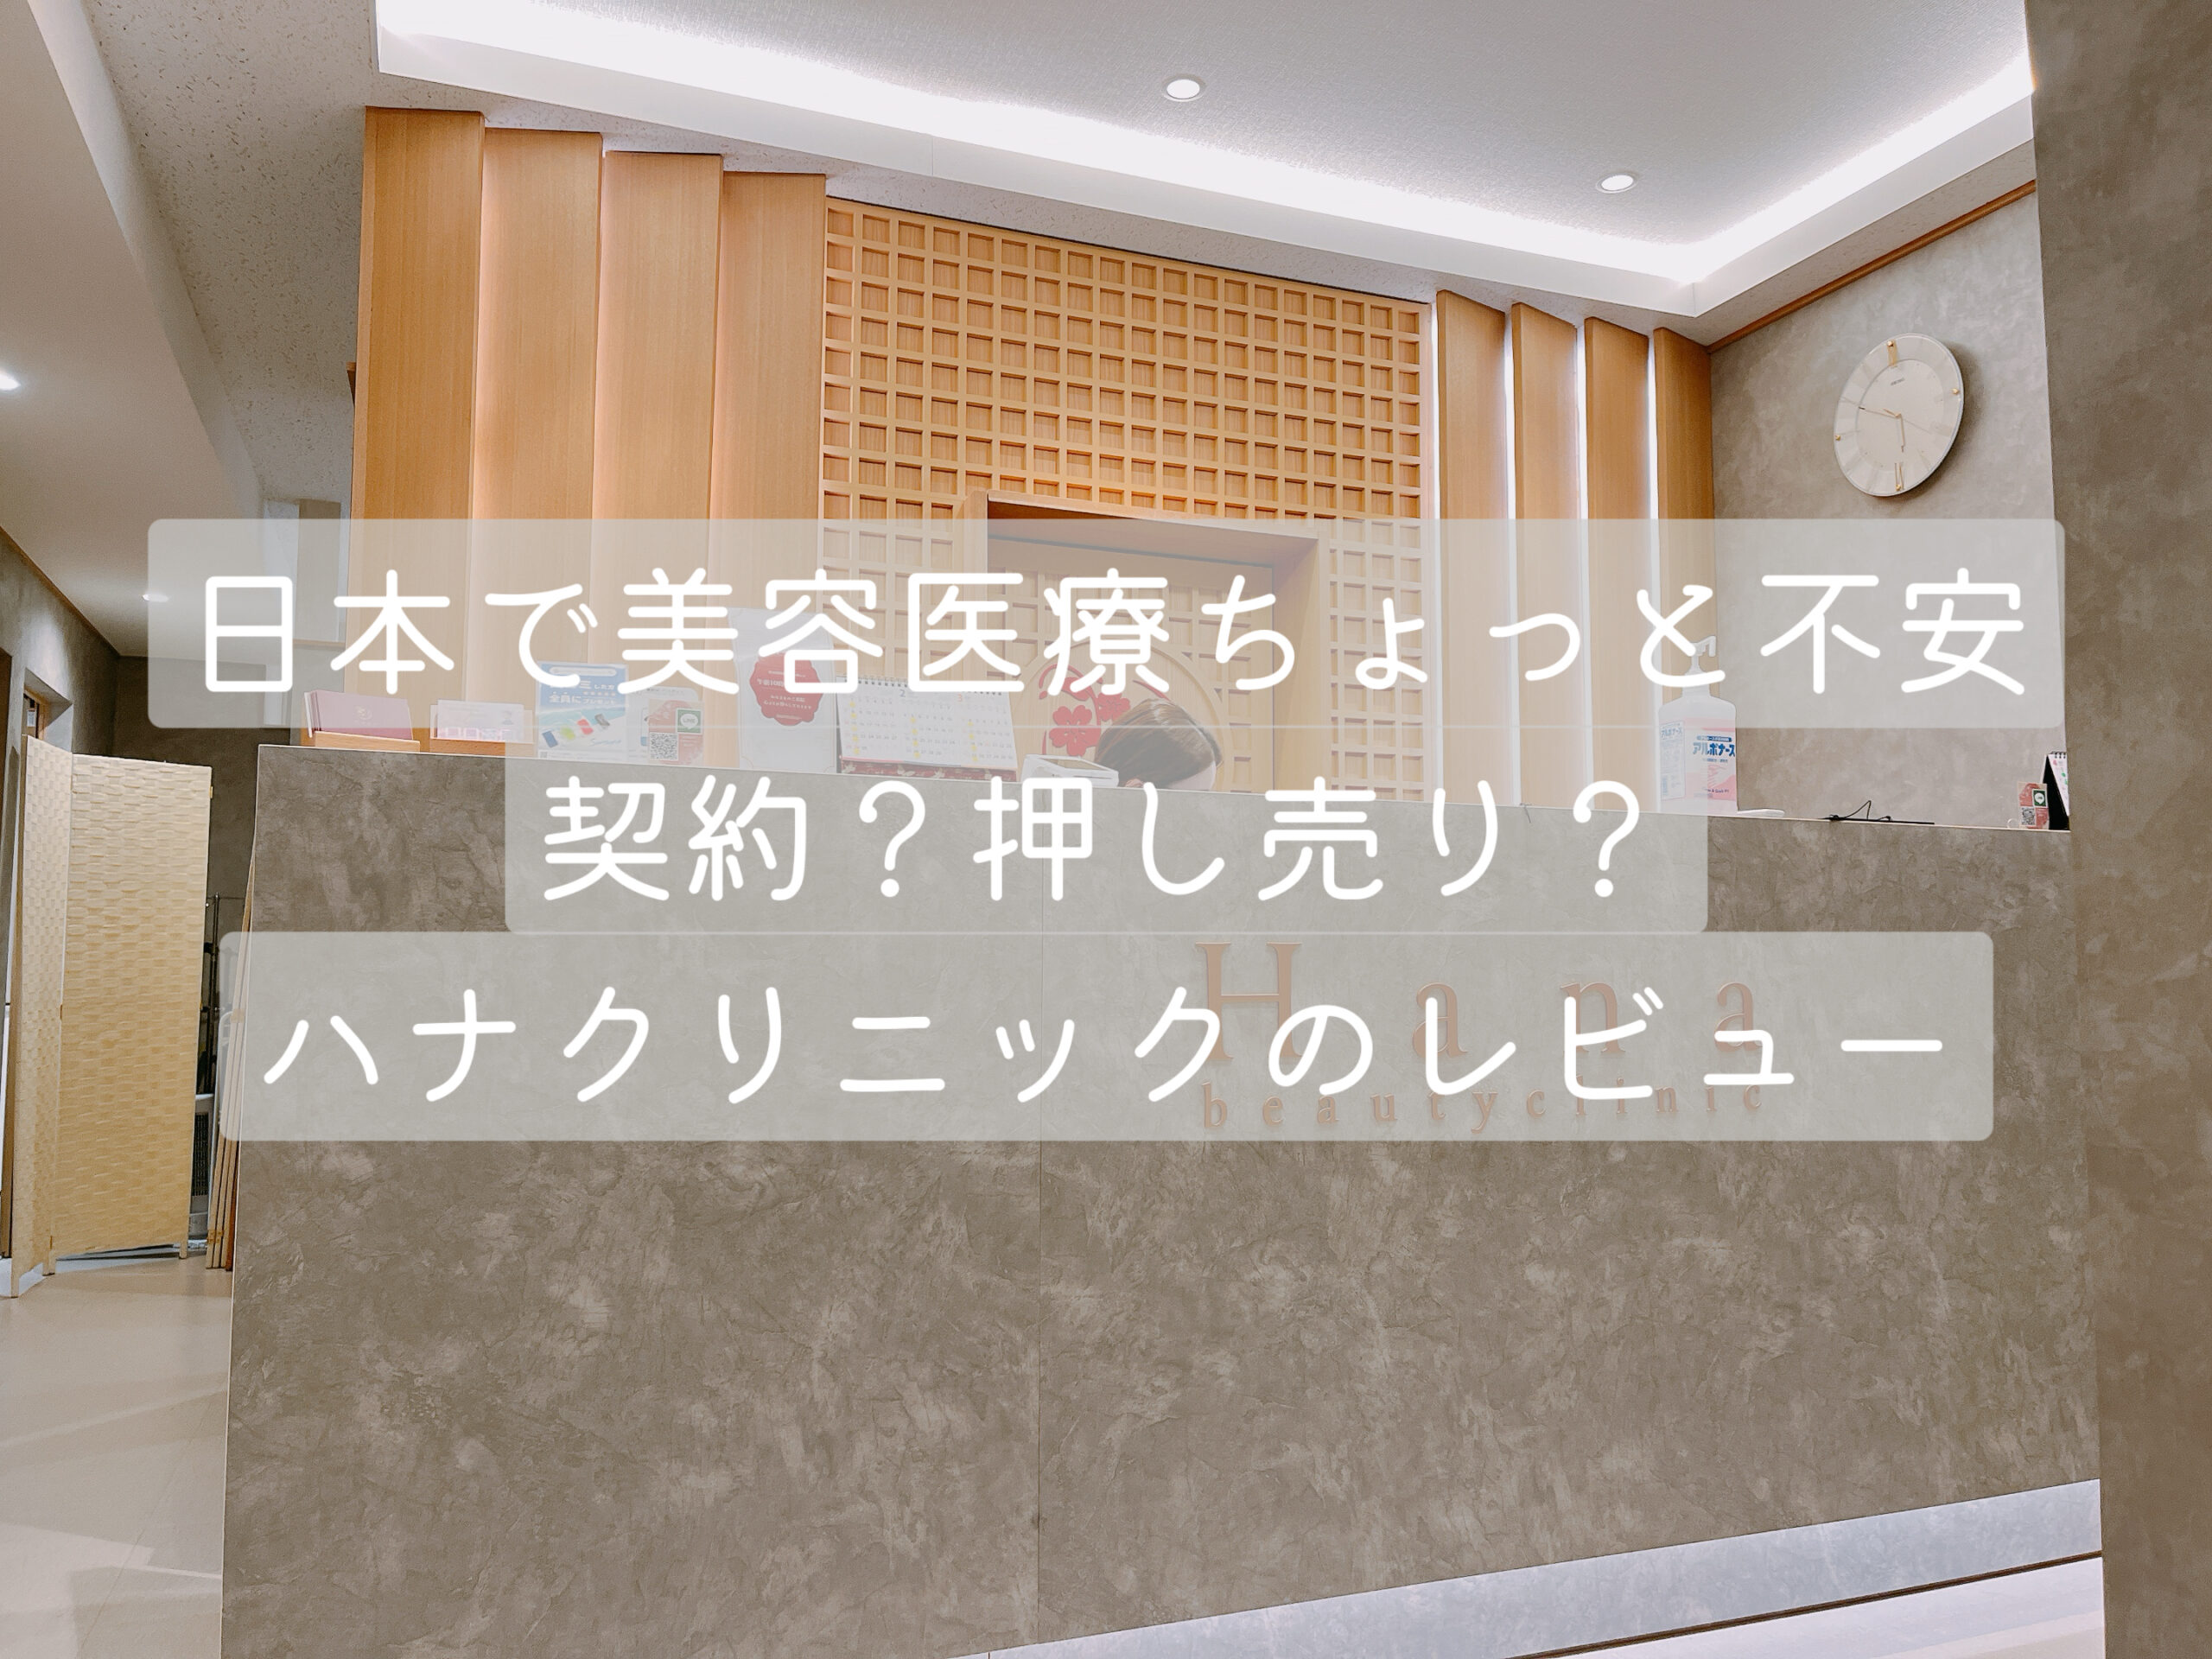 【ハナクリニック】カンナムオンニを使って日本の美容医療クリニックを予約して行って来た感想！のアイキャッチ画像